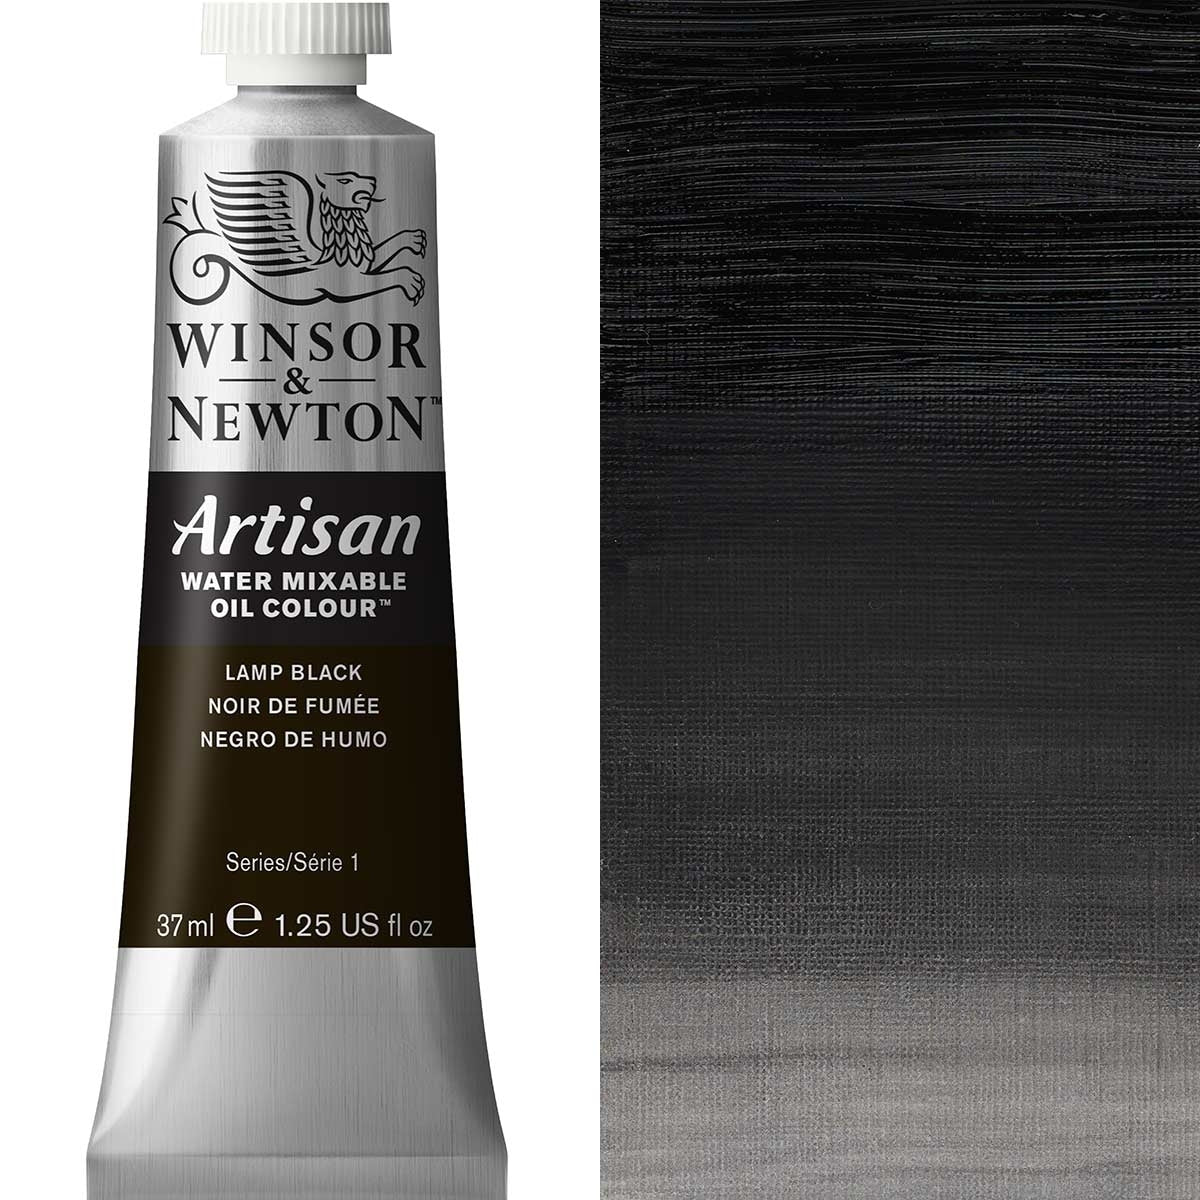 Winsor e Newton - Watermixable di colore olio artigianale - 37 ml - Lampada nera